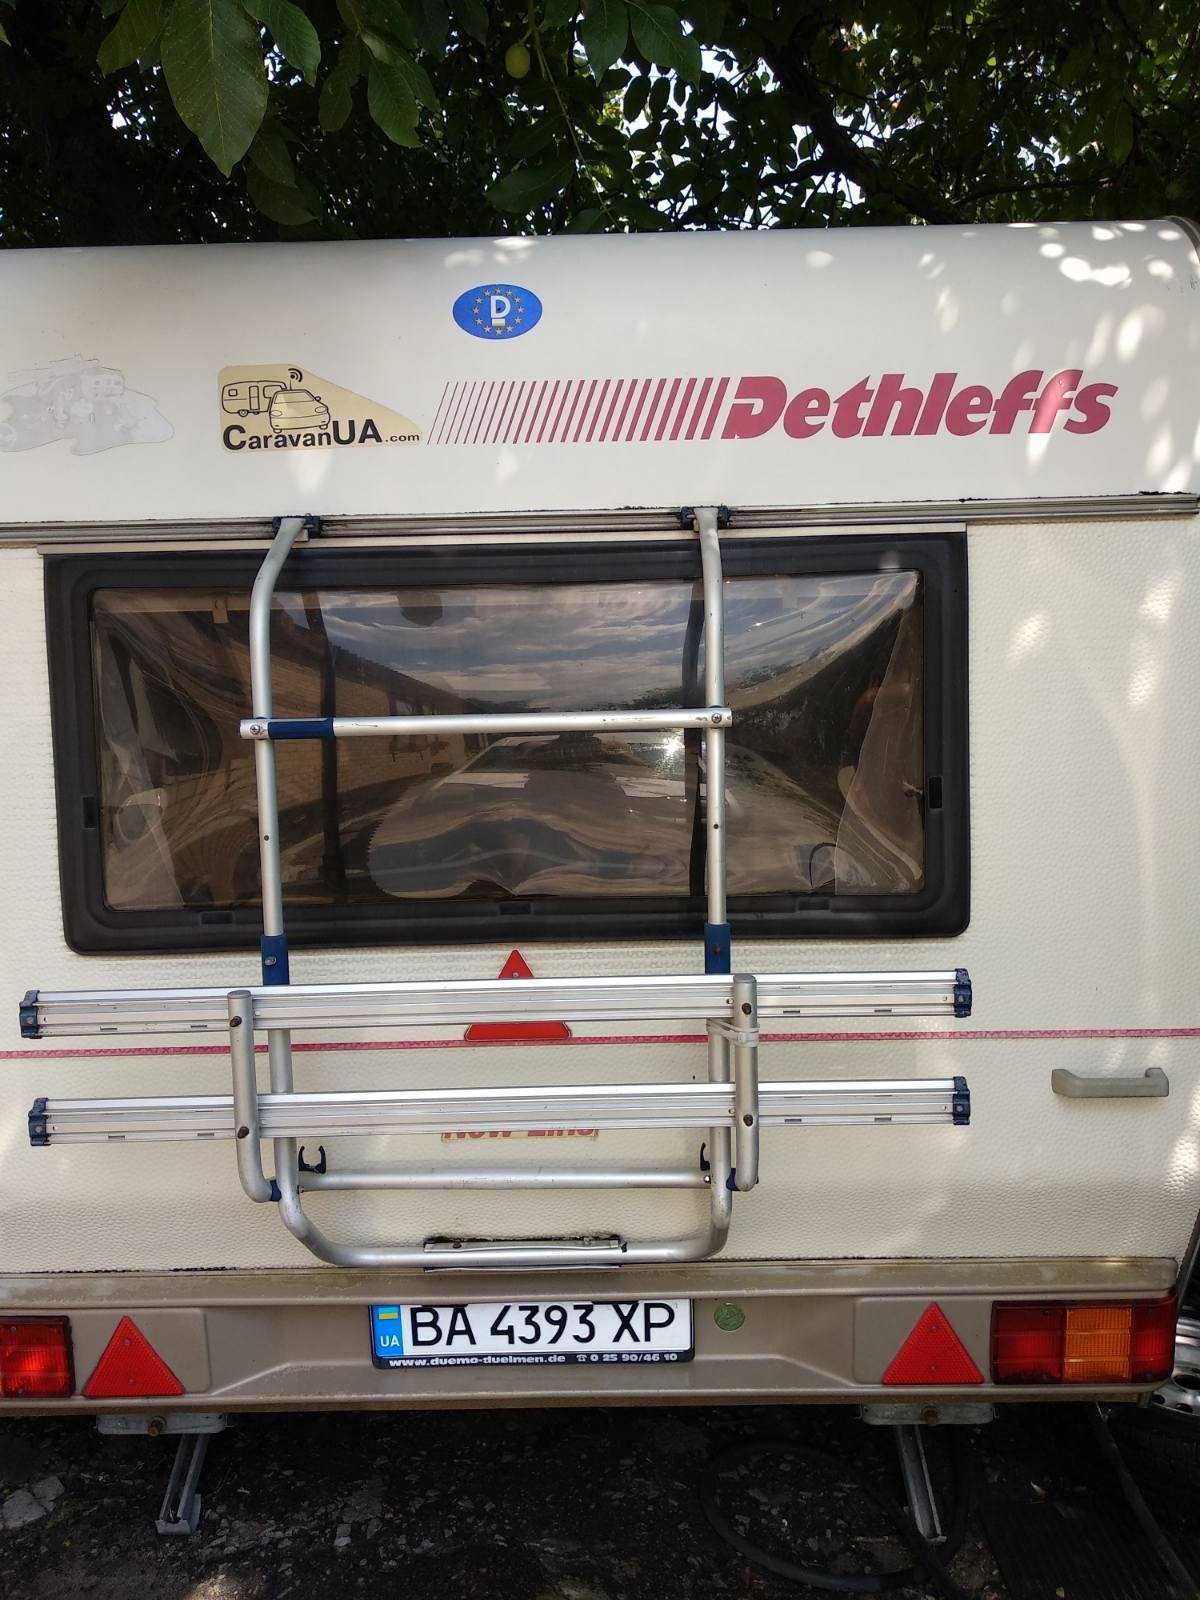 житловий фургон Dethleffs RM-2